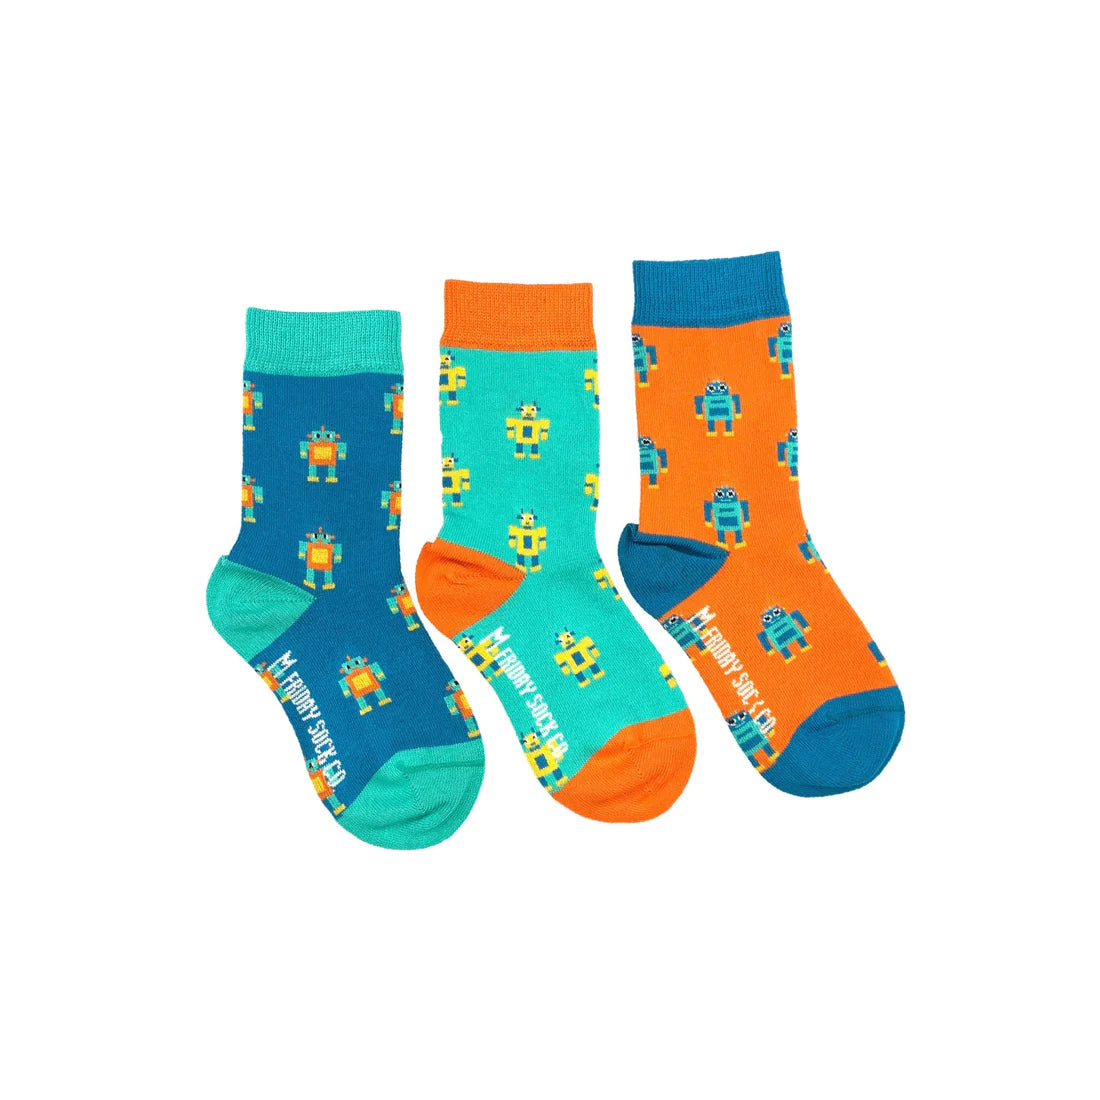 Mismatched Toddler Socks